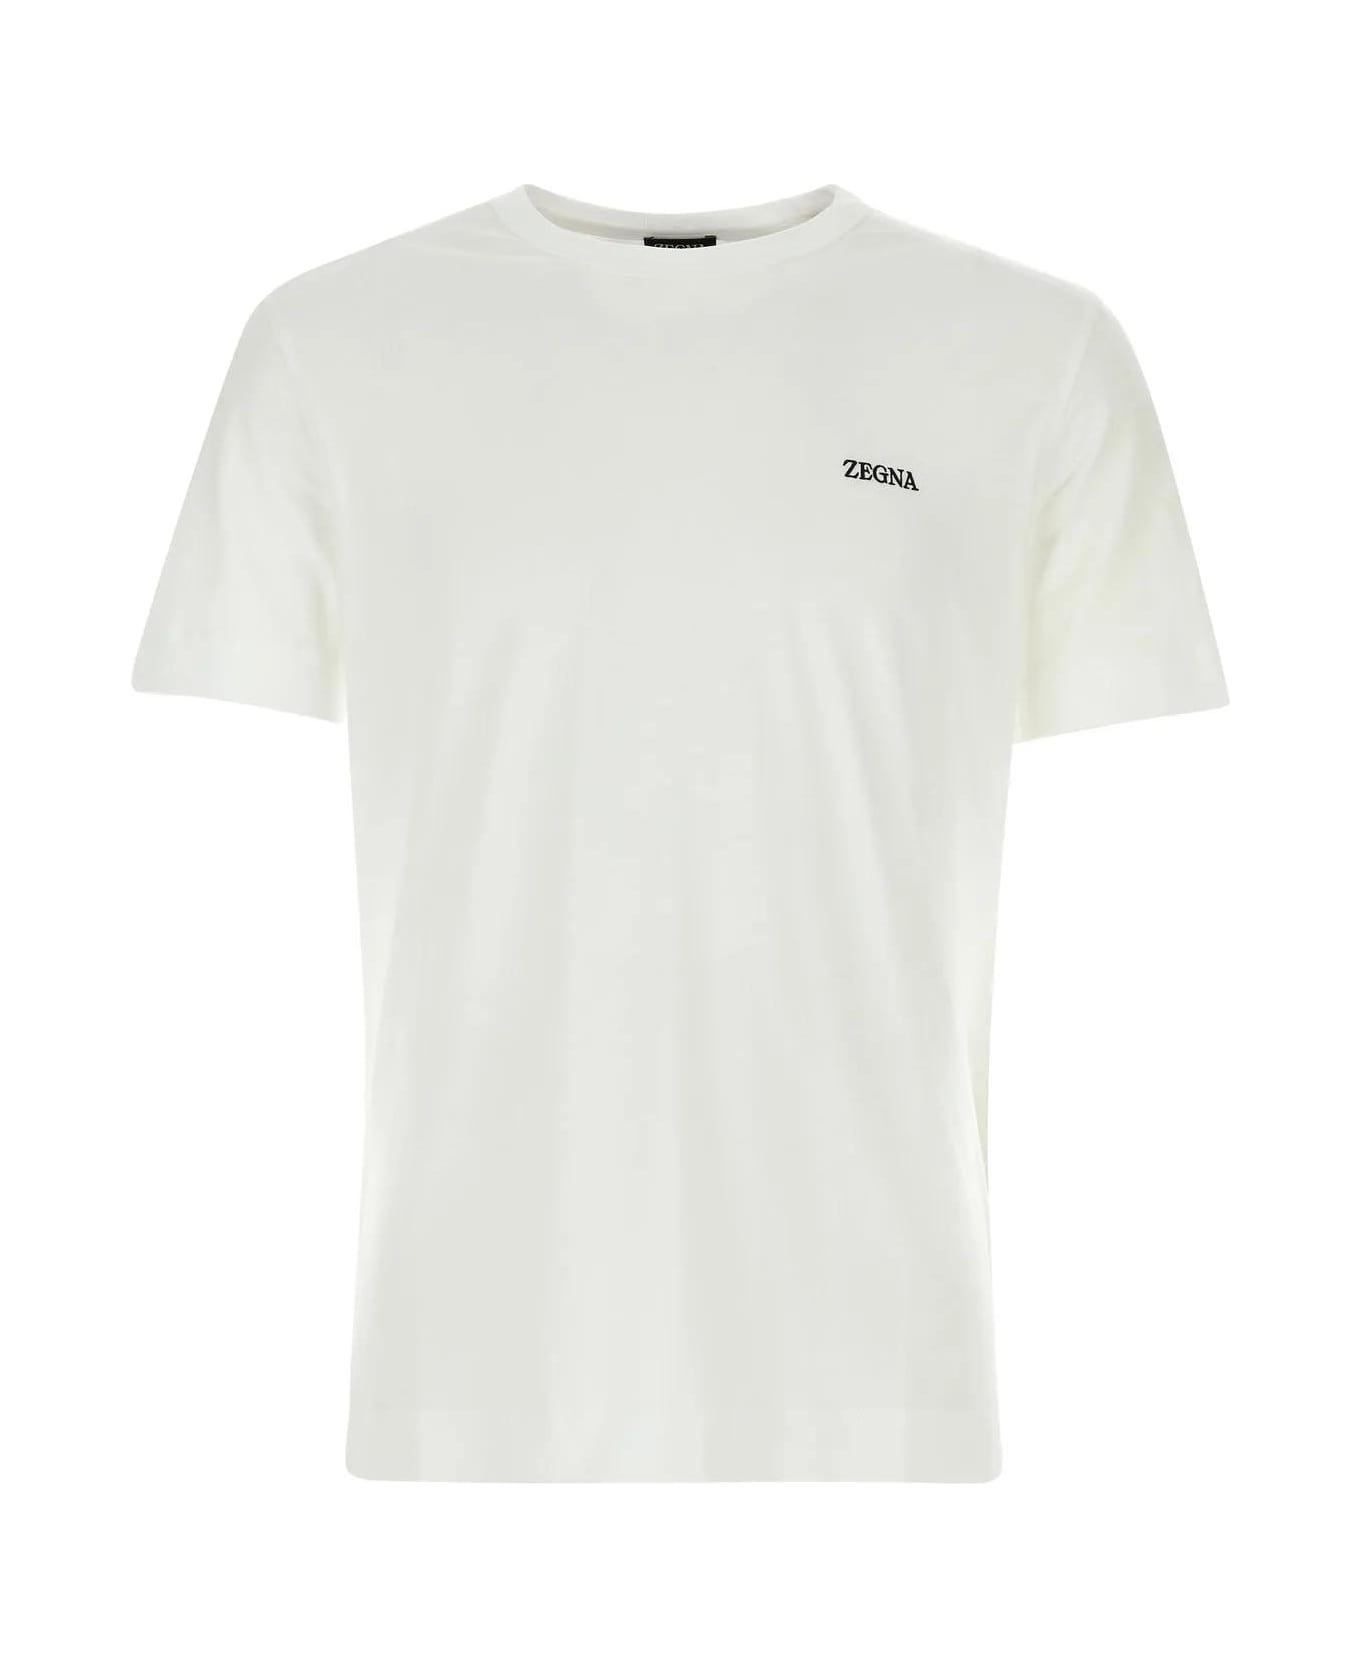 Zegna White Cotton T-shirt - White